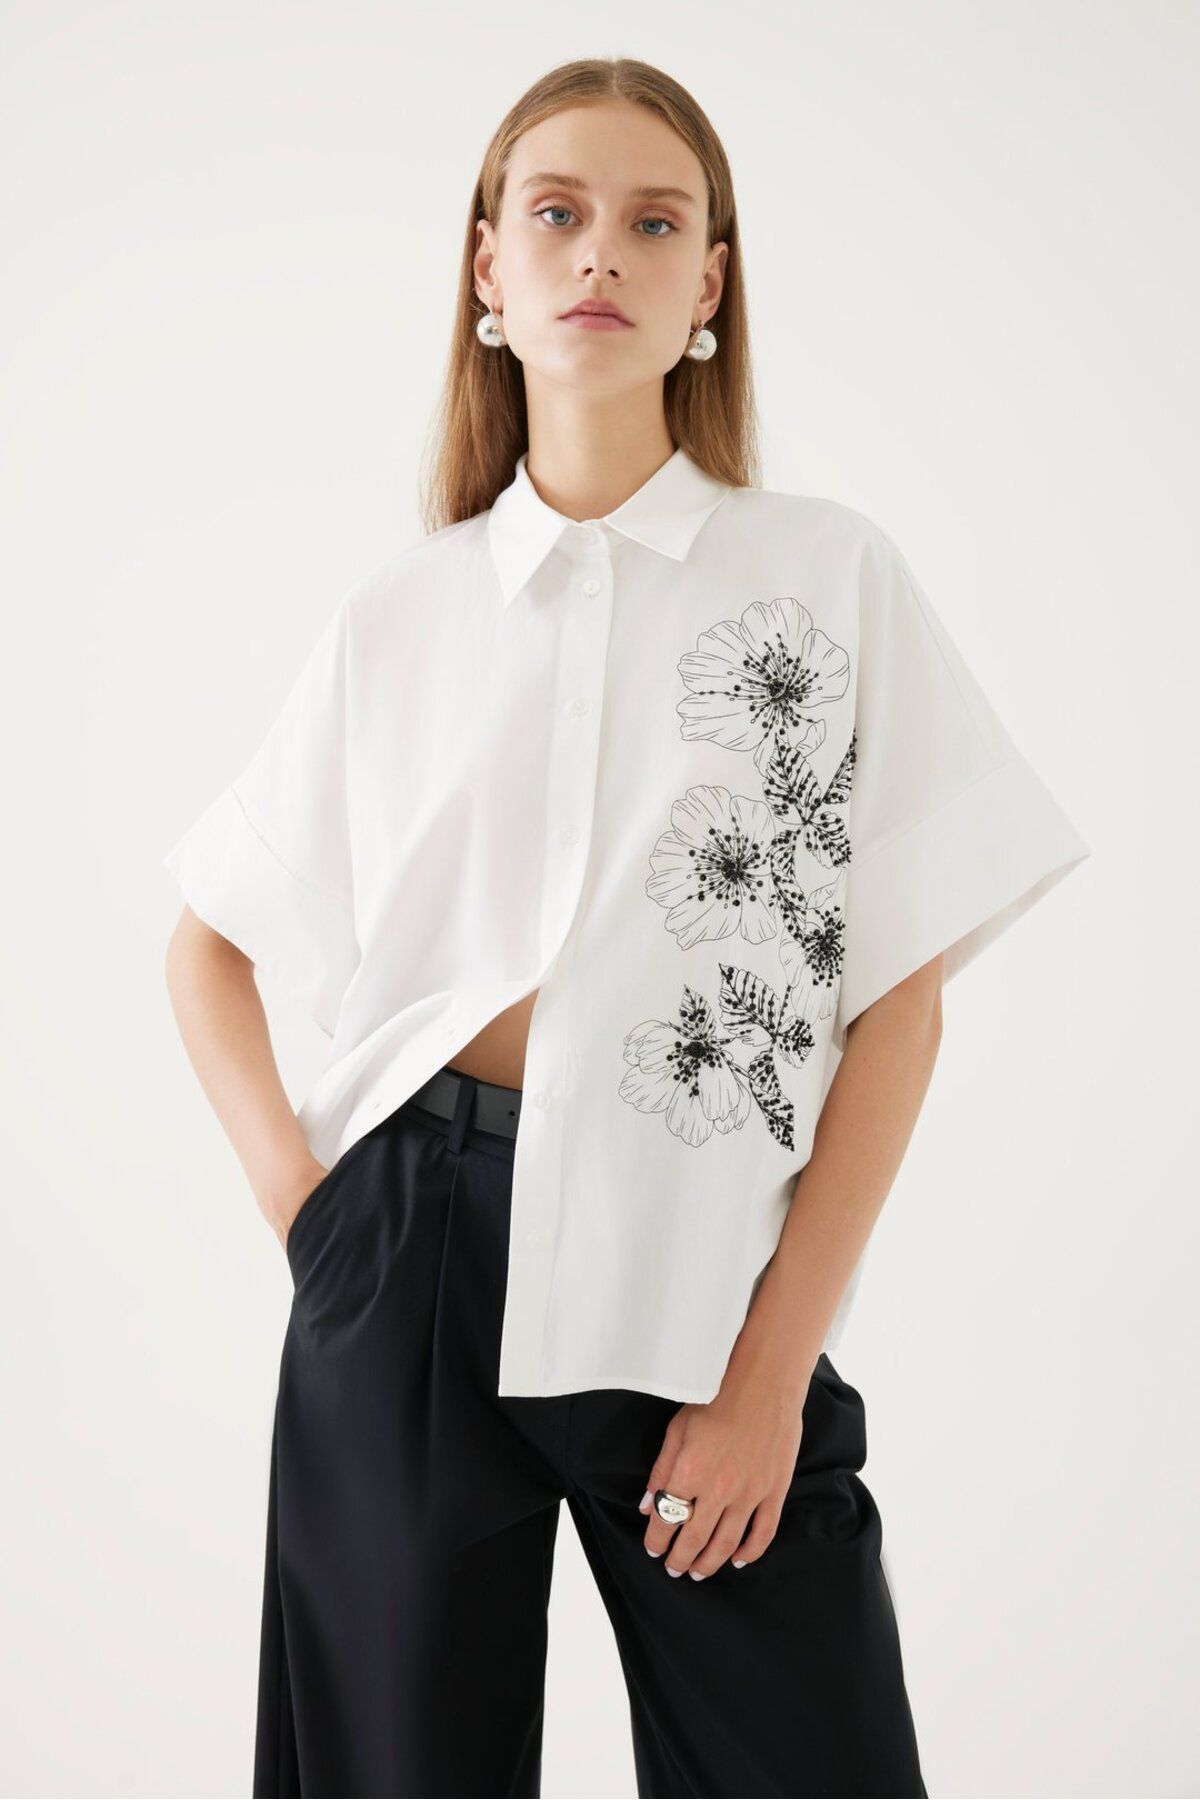 Exquise Çiçekli ve Beyaz Gömlek Tasarımı